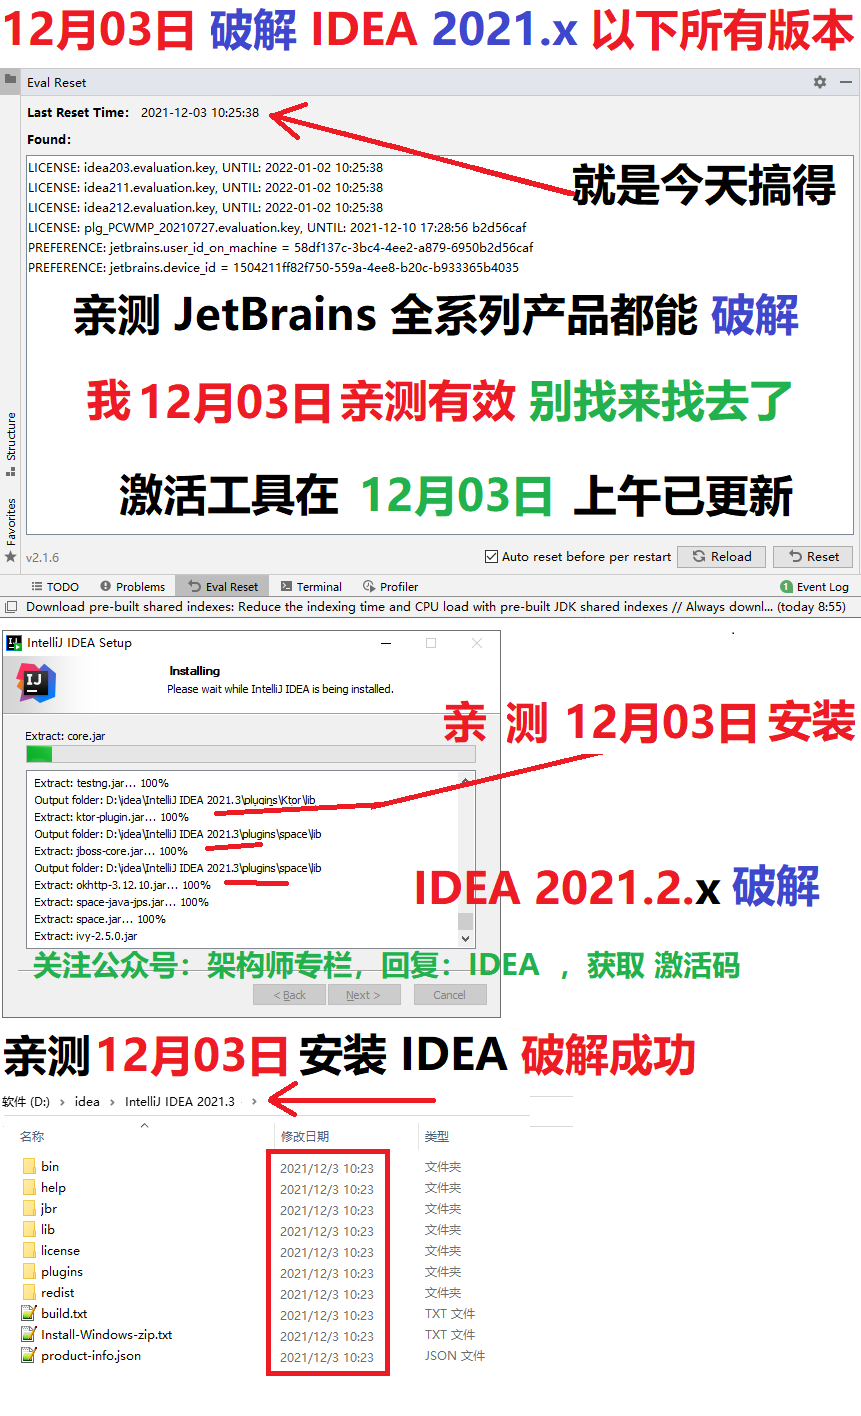 IntelliJ IDEA2021.2.3破解，IDEA 2021.2.x激活破解，2022激活持续更新